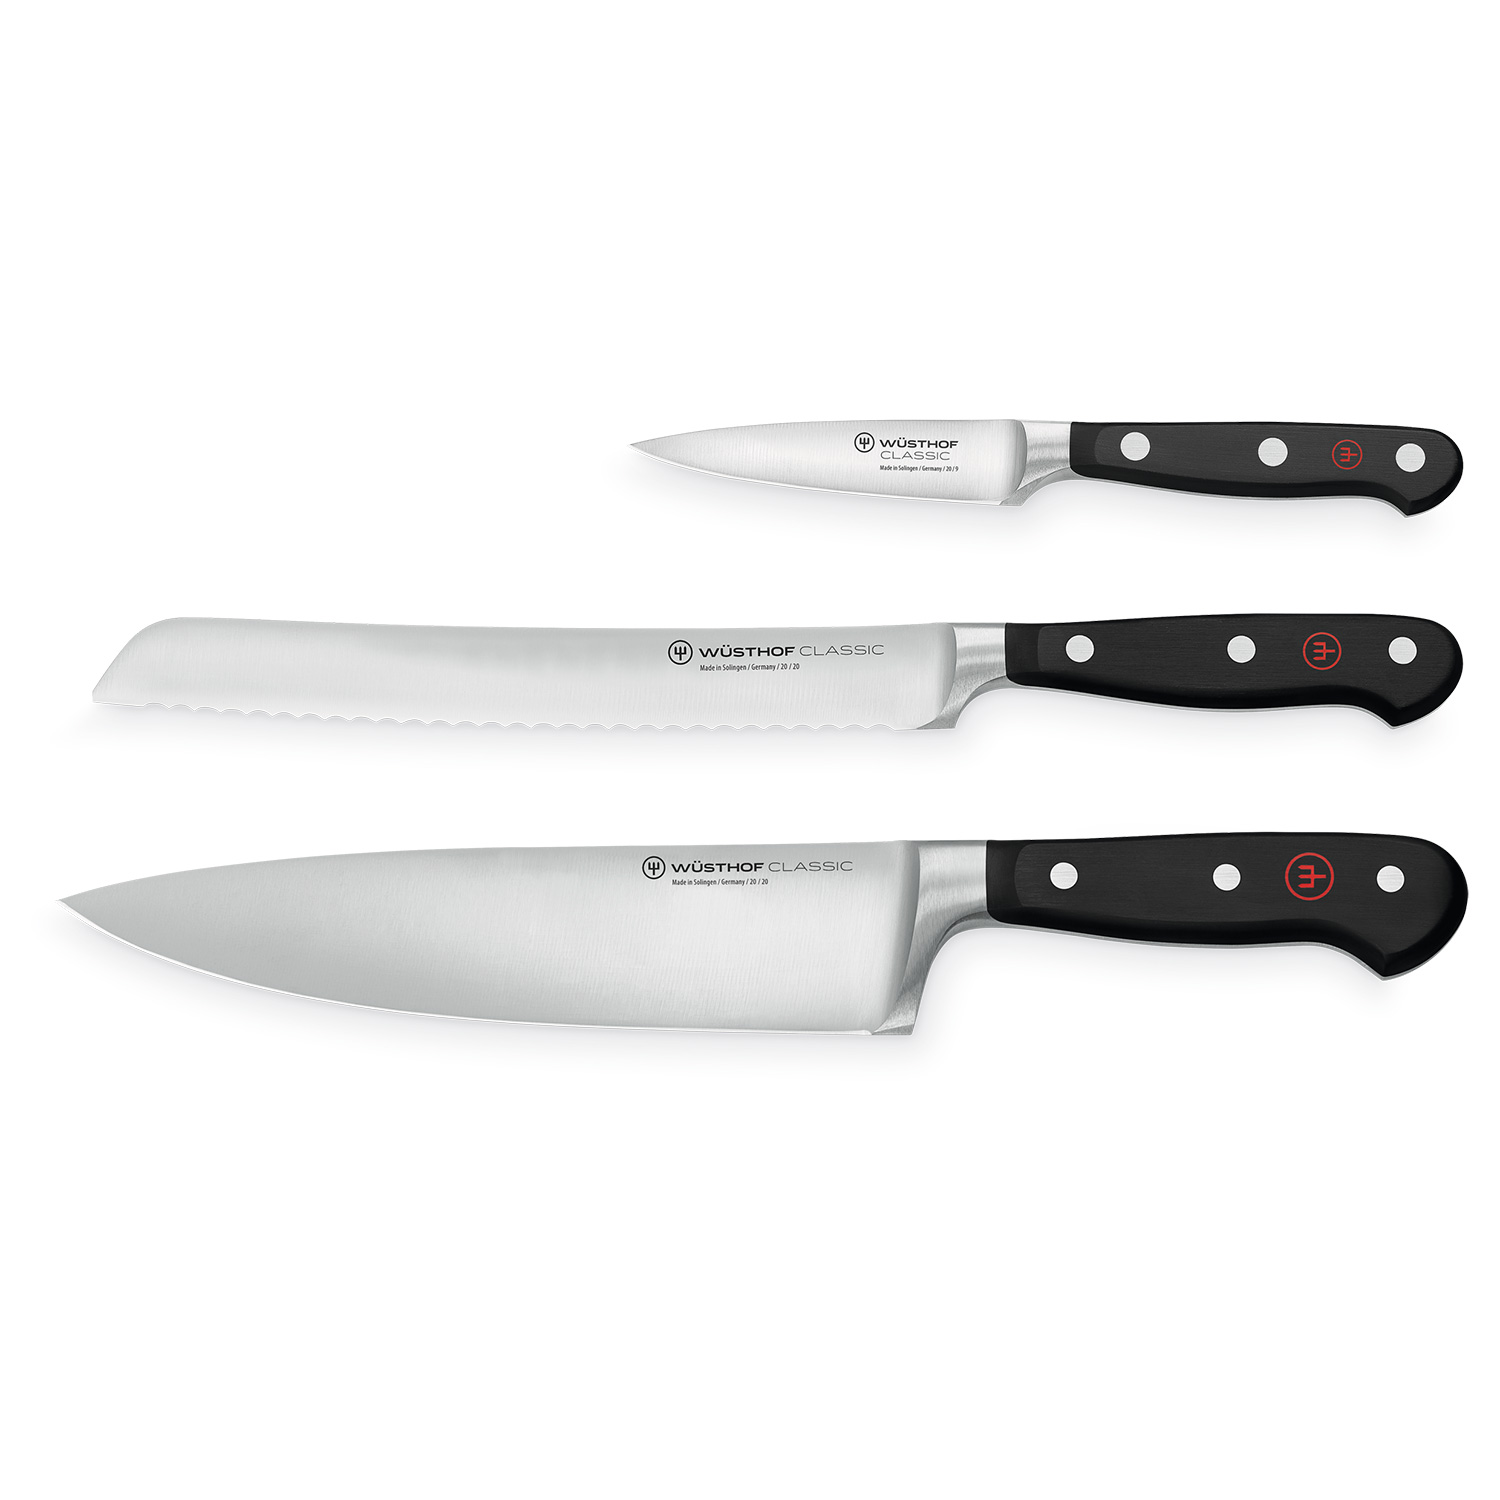 https://api-prod.royaldesign.se/api/products/image/2/wusthof-classic-knife-set-3-pack-1